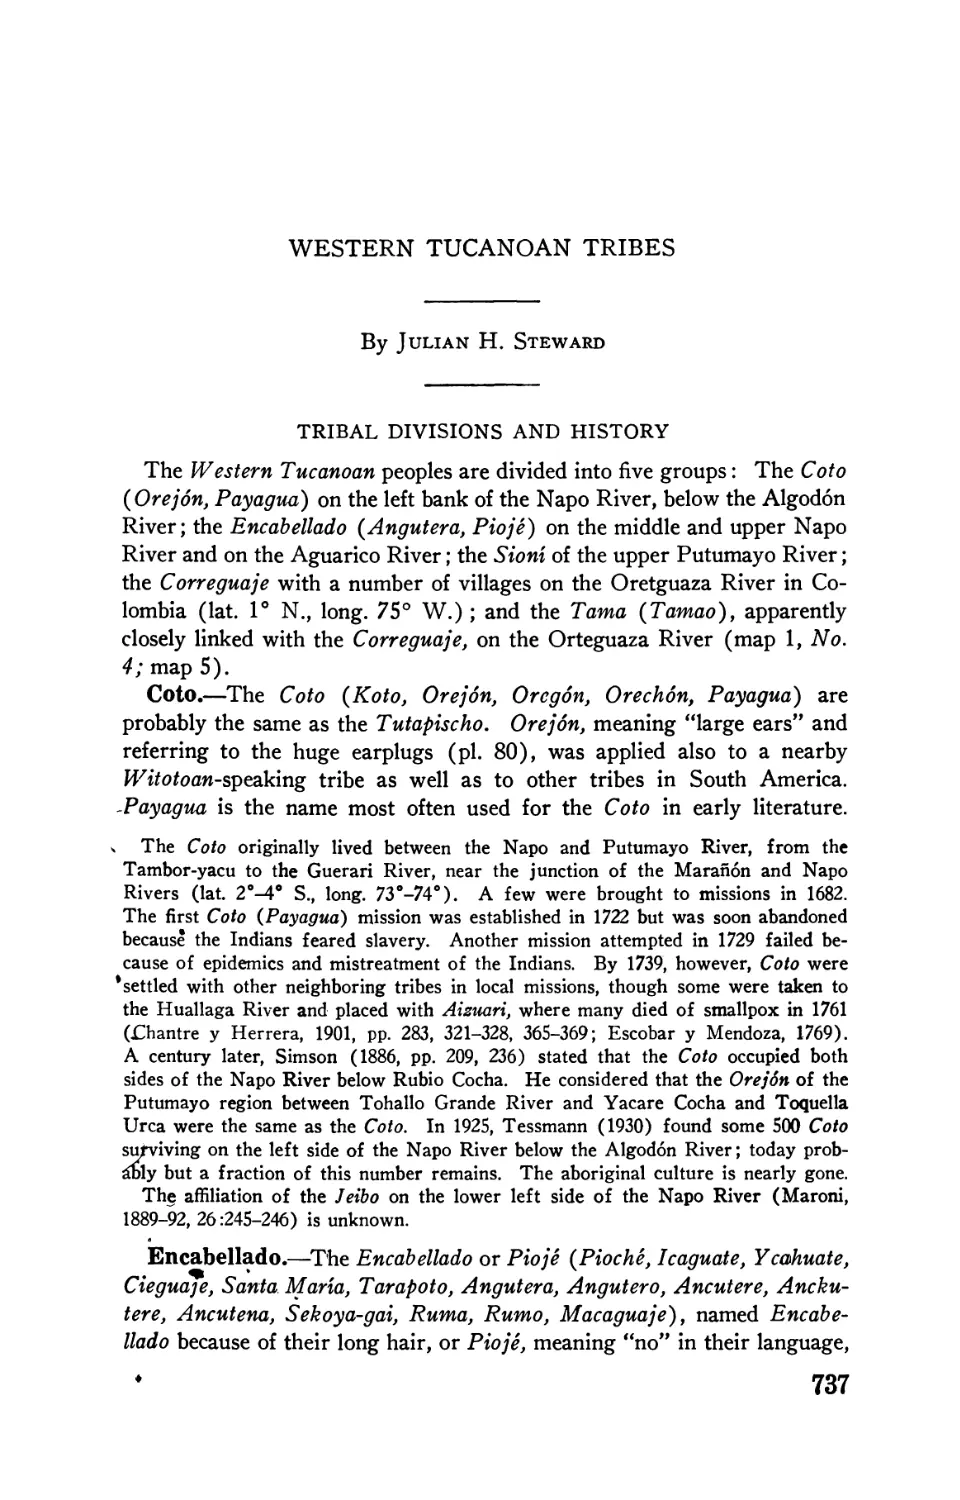 Western Tucanoan tribes, by Julian H. Steward